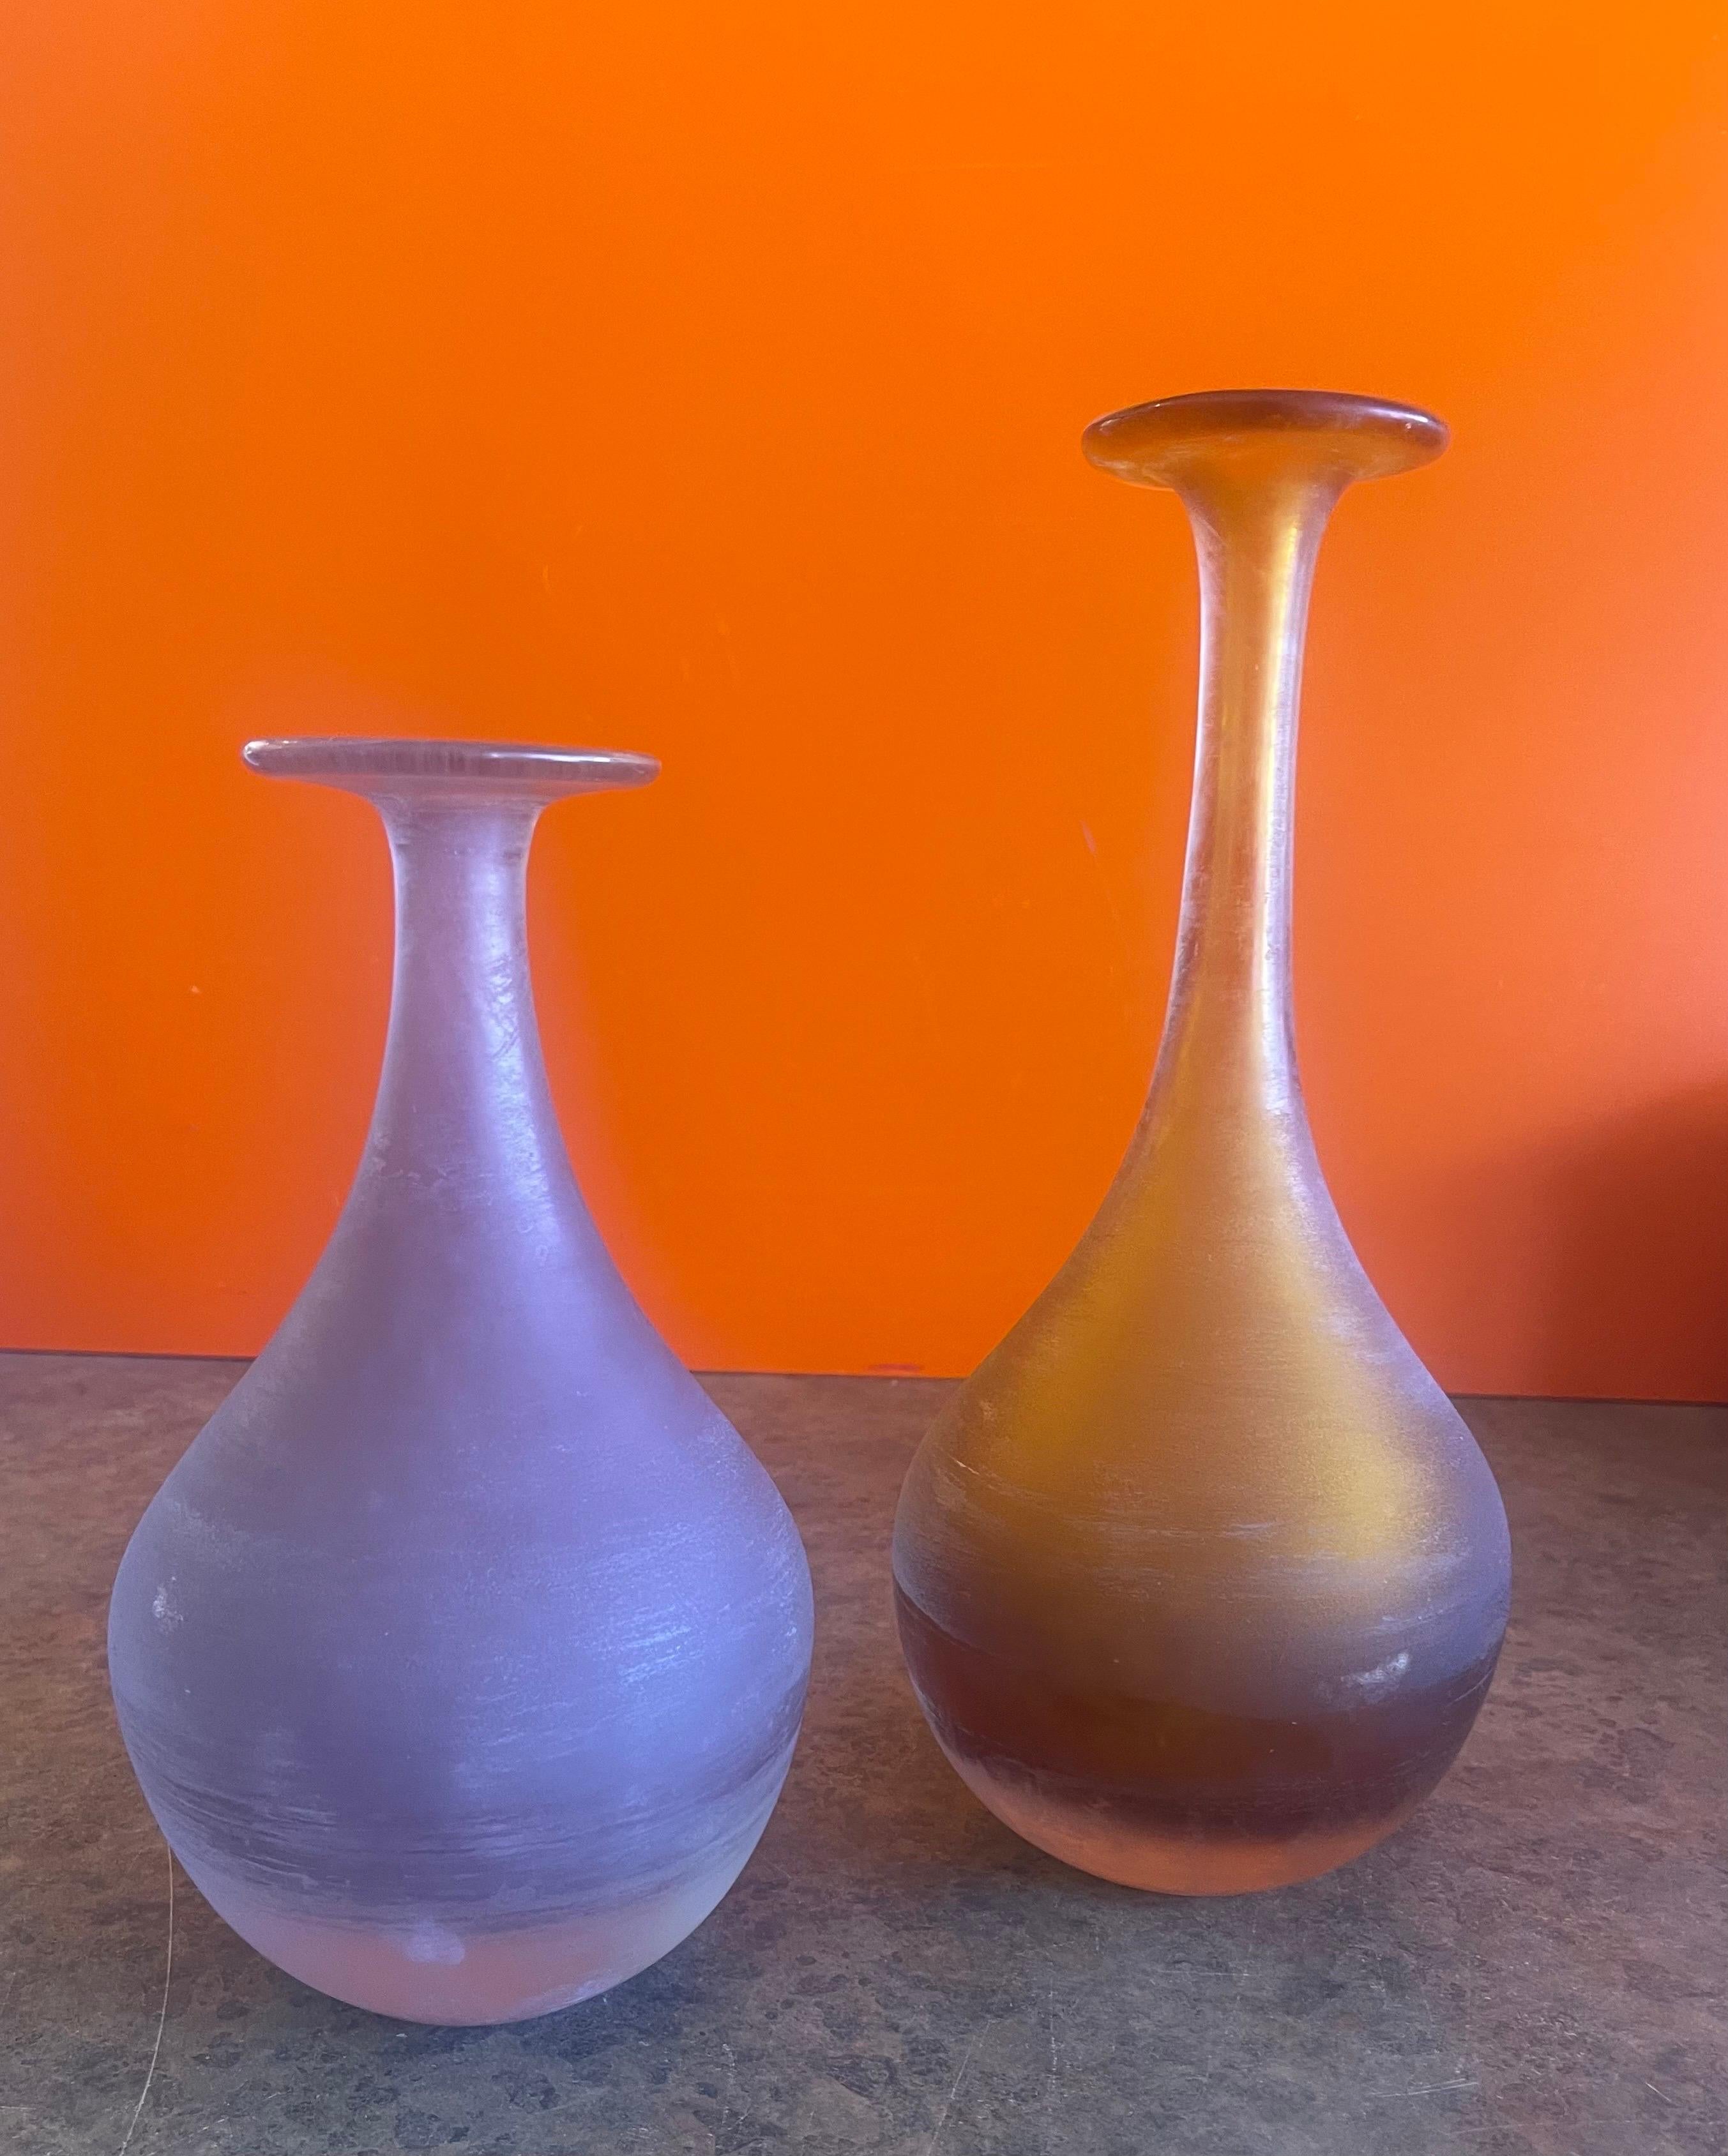 Superbe paire de vases en verre d'art vénitien italien post-moderne, datant des années 1990. Le plus petit vase est d'un violet bleuté et le plus grand d'un jaune éclatant. La paire est en très bon état vintage, sans éclats ni fissures, et mesure